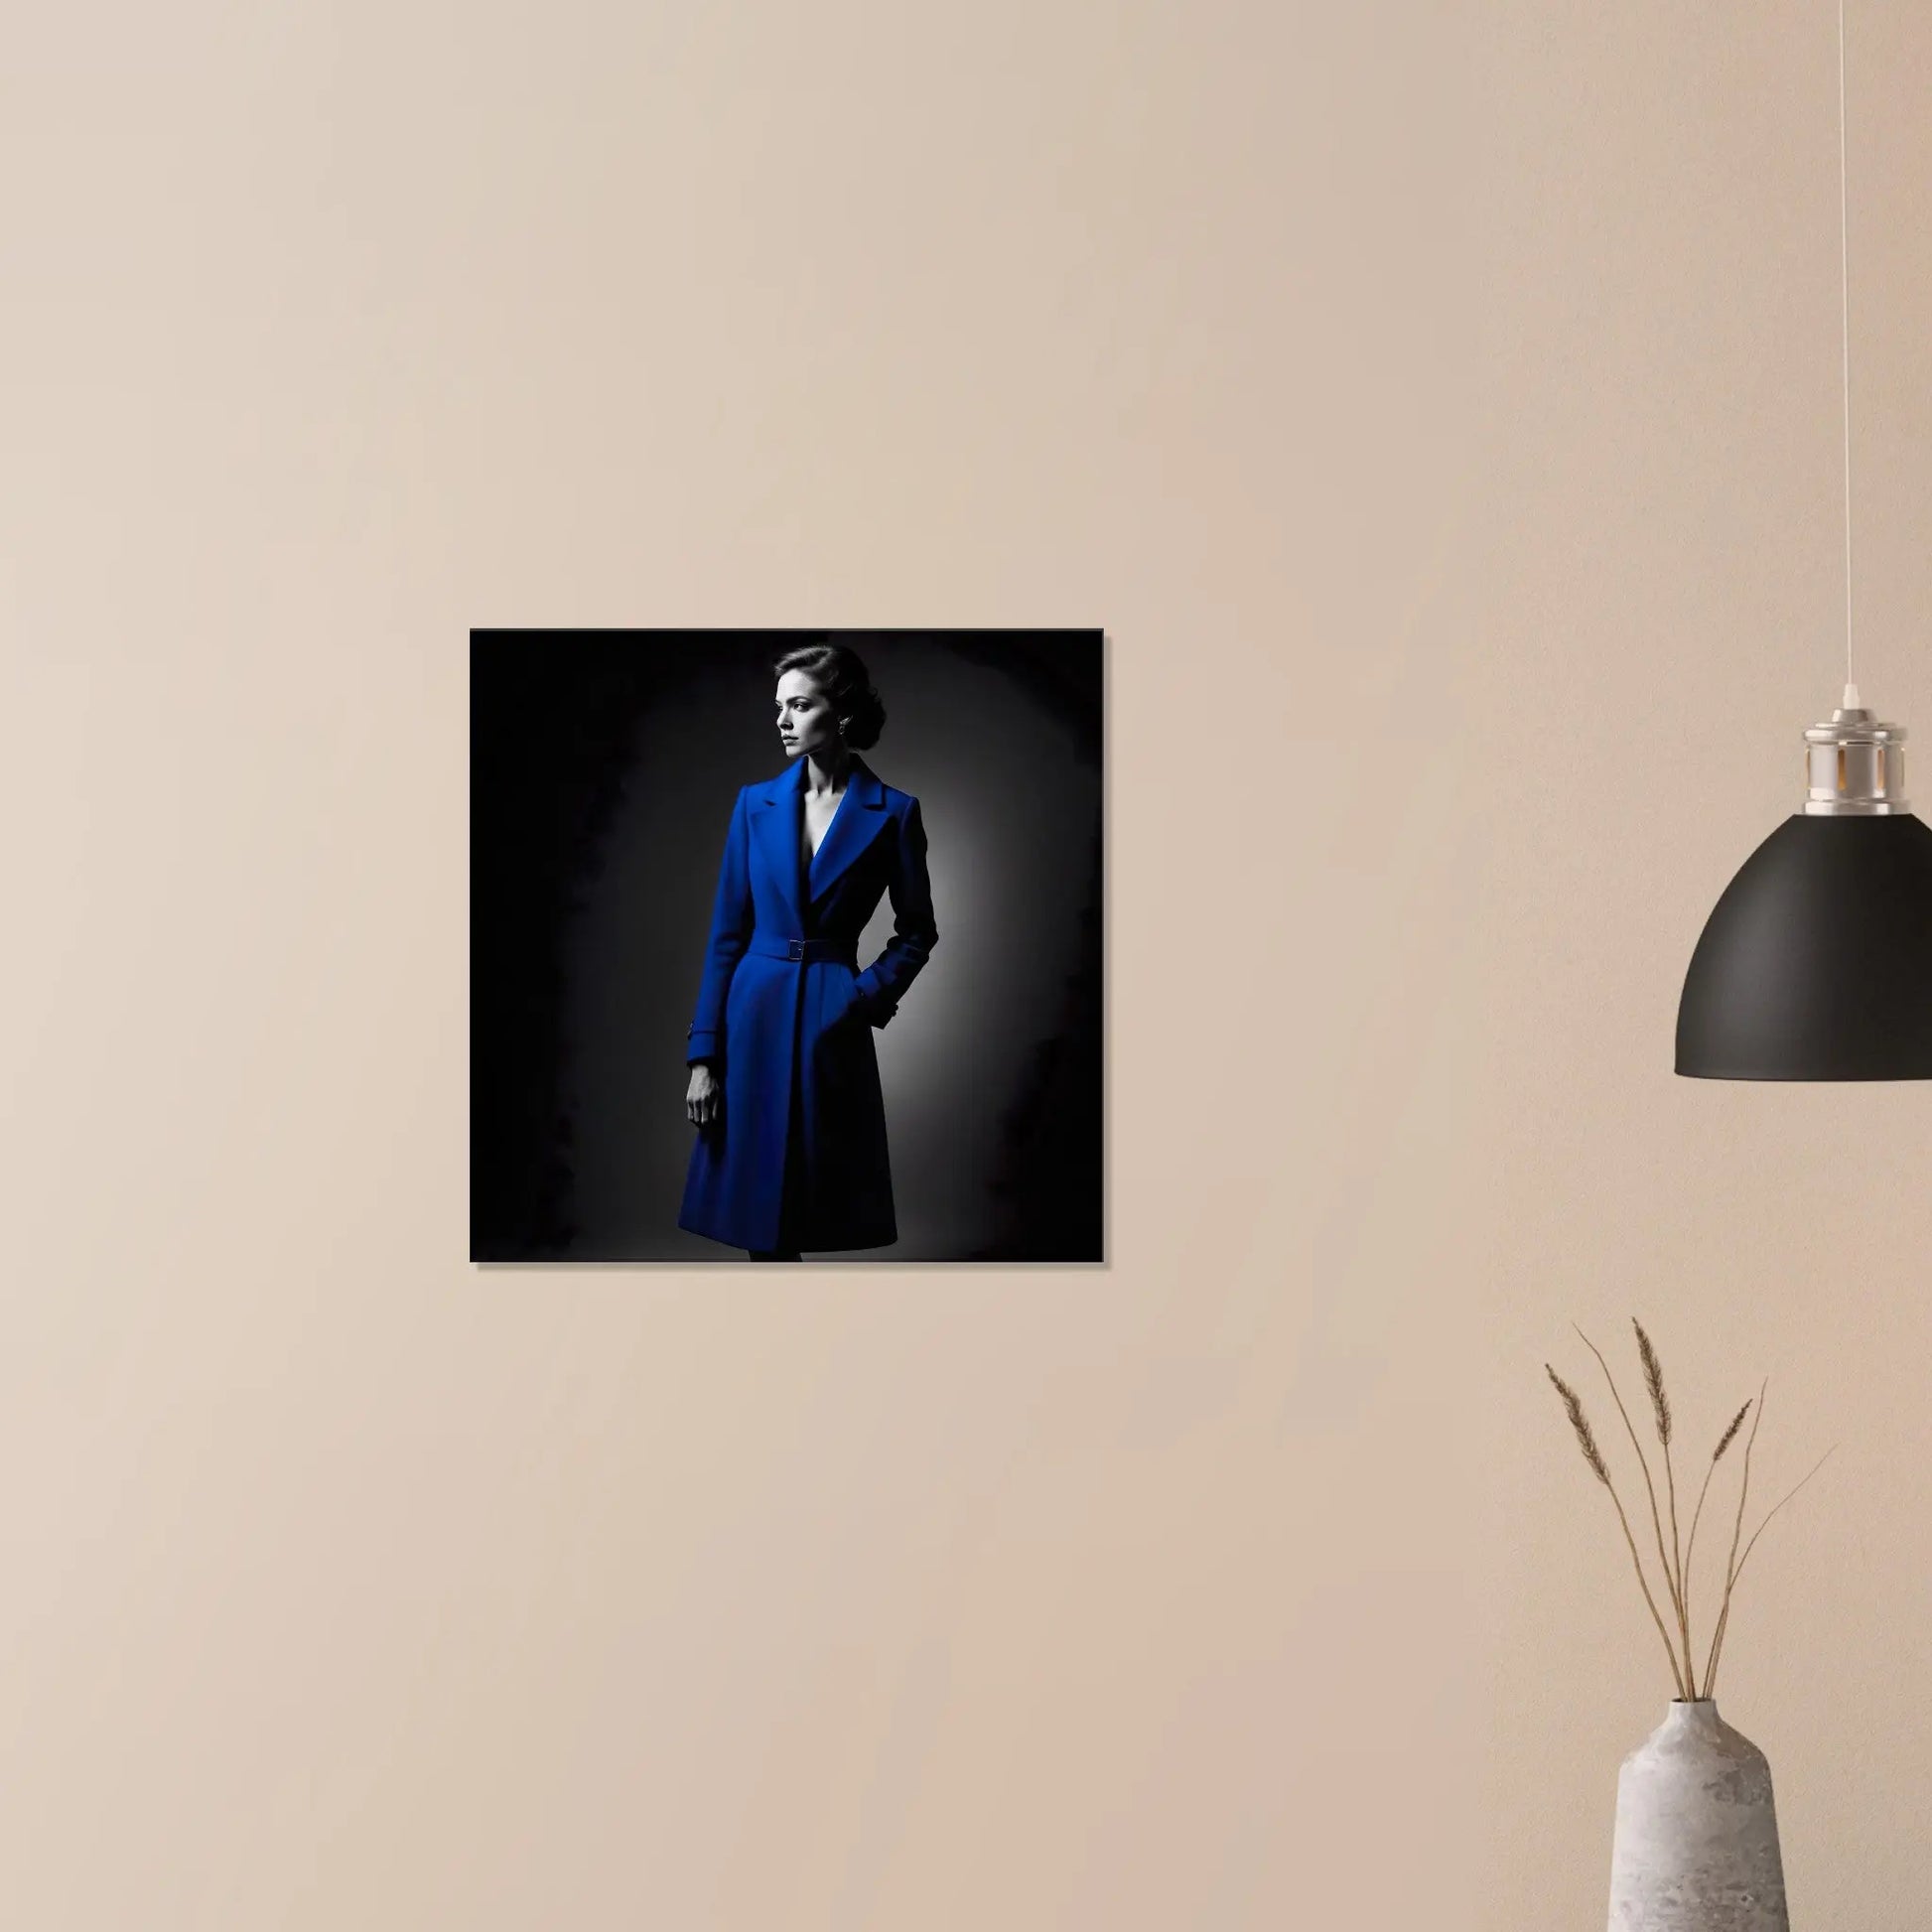 Leinwandbild - Frau im blauen Mantel - Schwarz-Weiß Stil, KI-Kunst - RolConArt, Schwarz-Weiß mit Akzentfarben, 